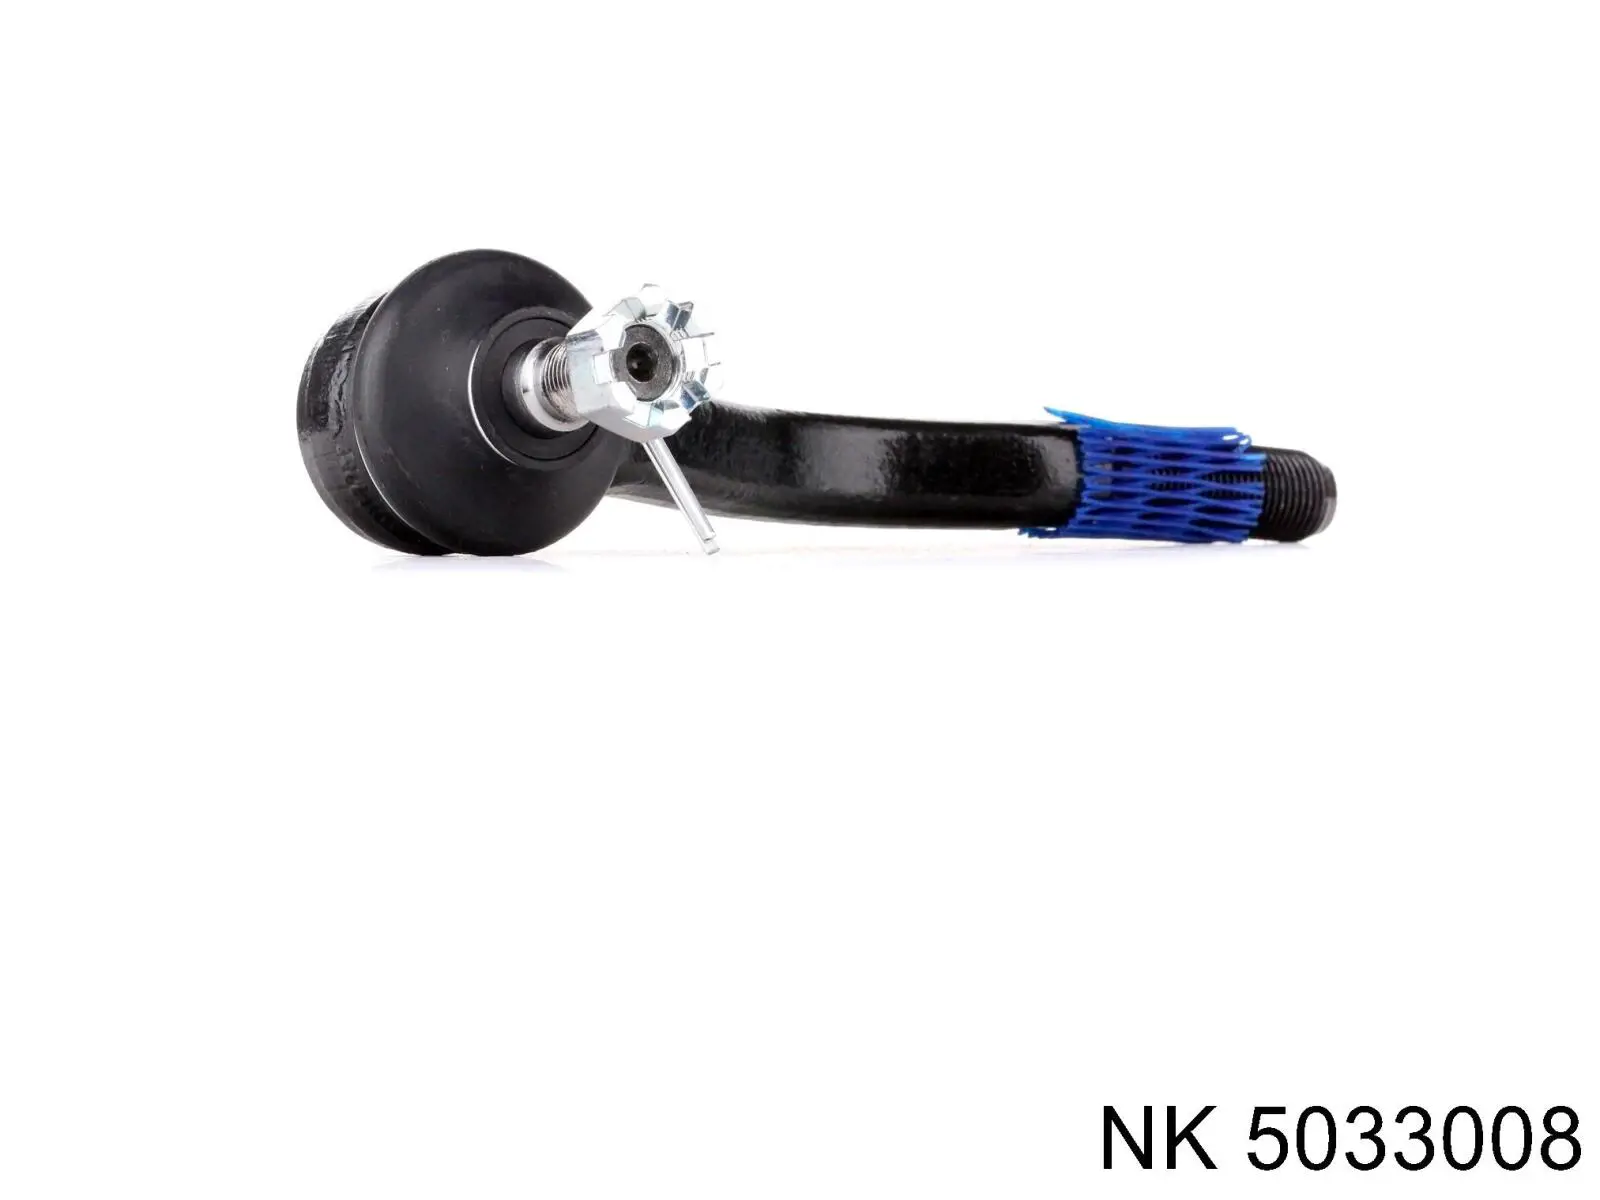 5033008 NK rótula barra de acoplamiento interior izquierda